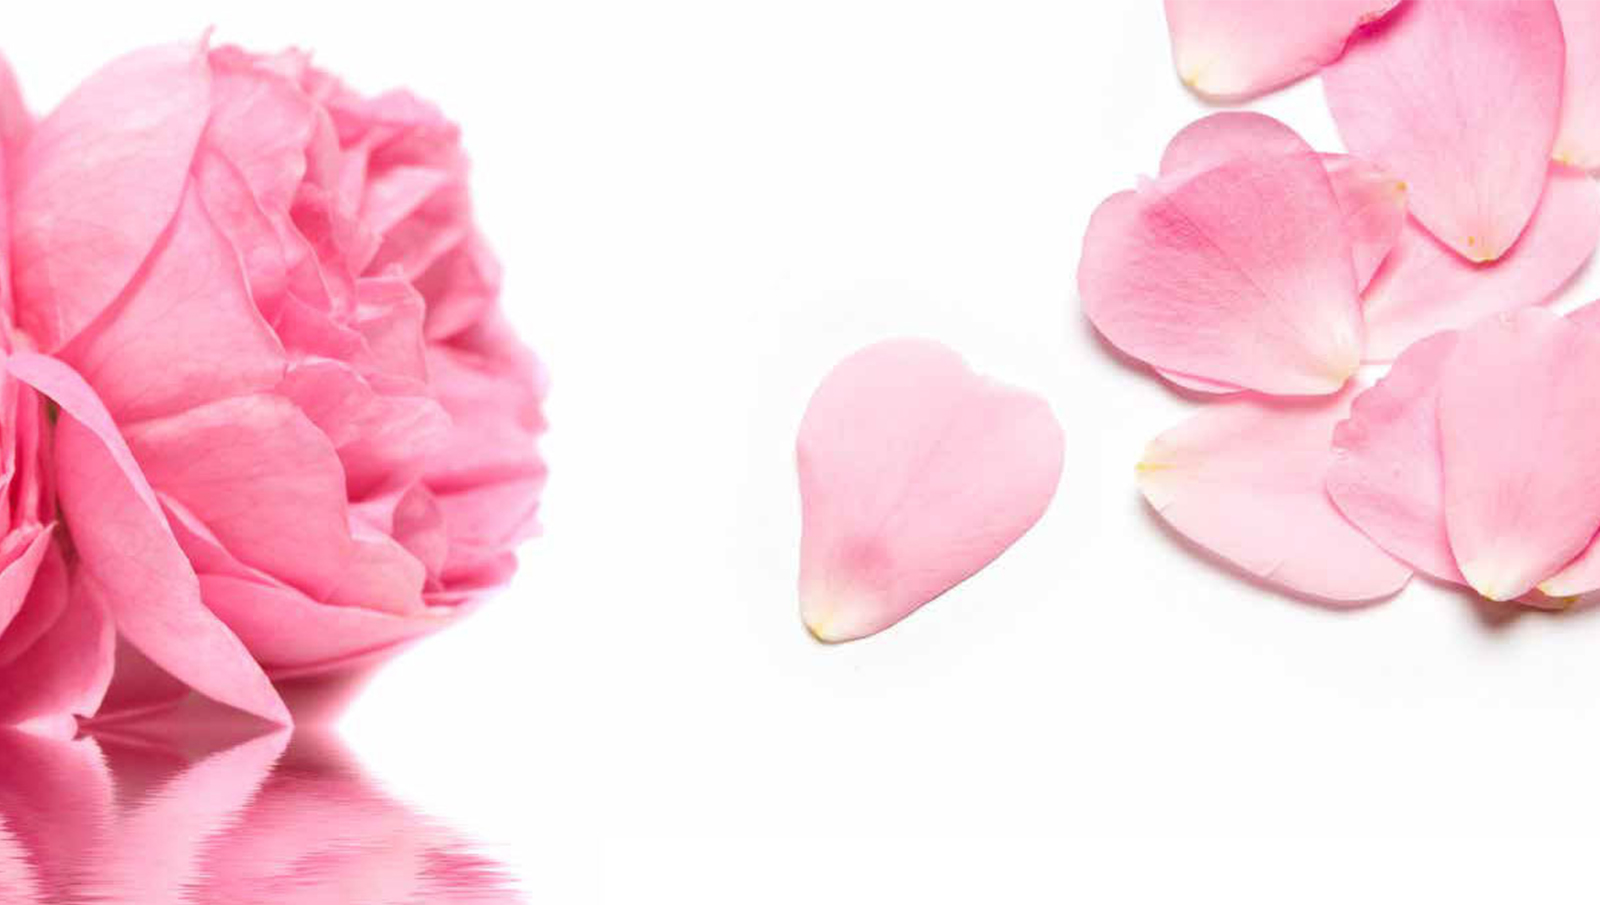 petali di rosa essiccati cosmetici